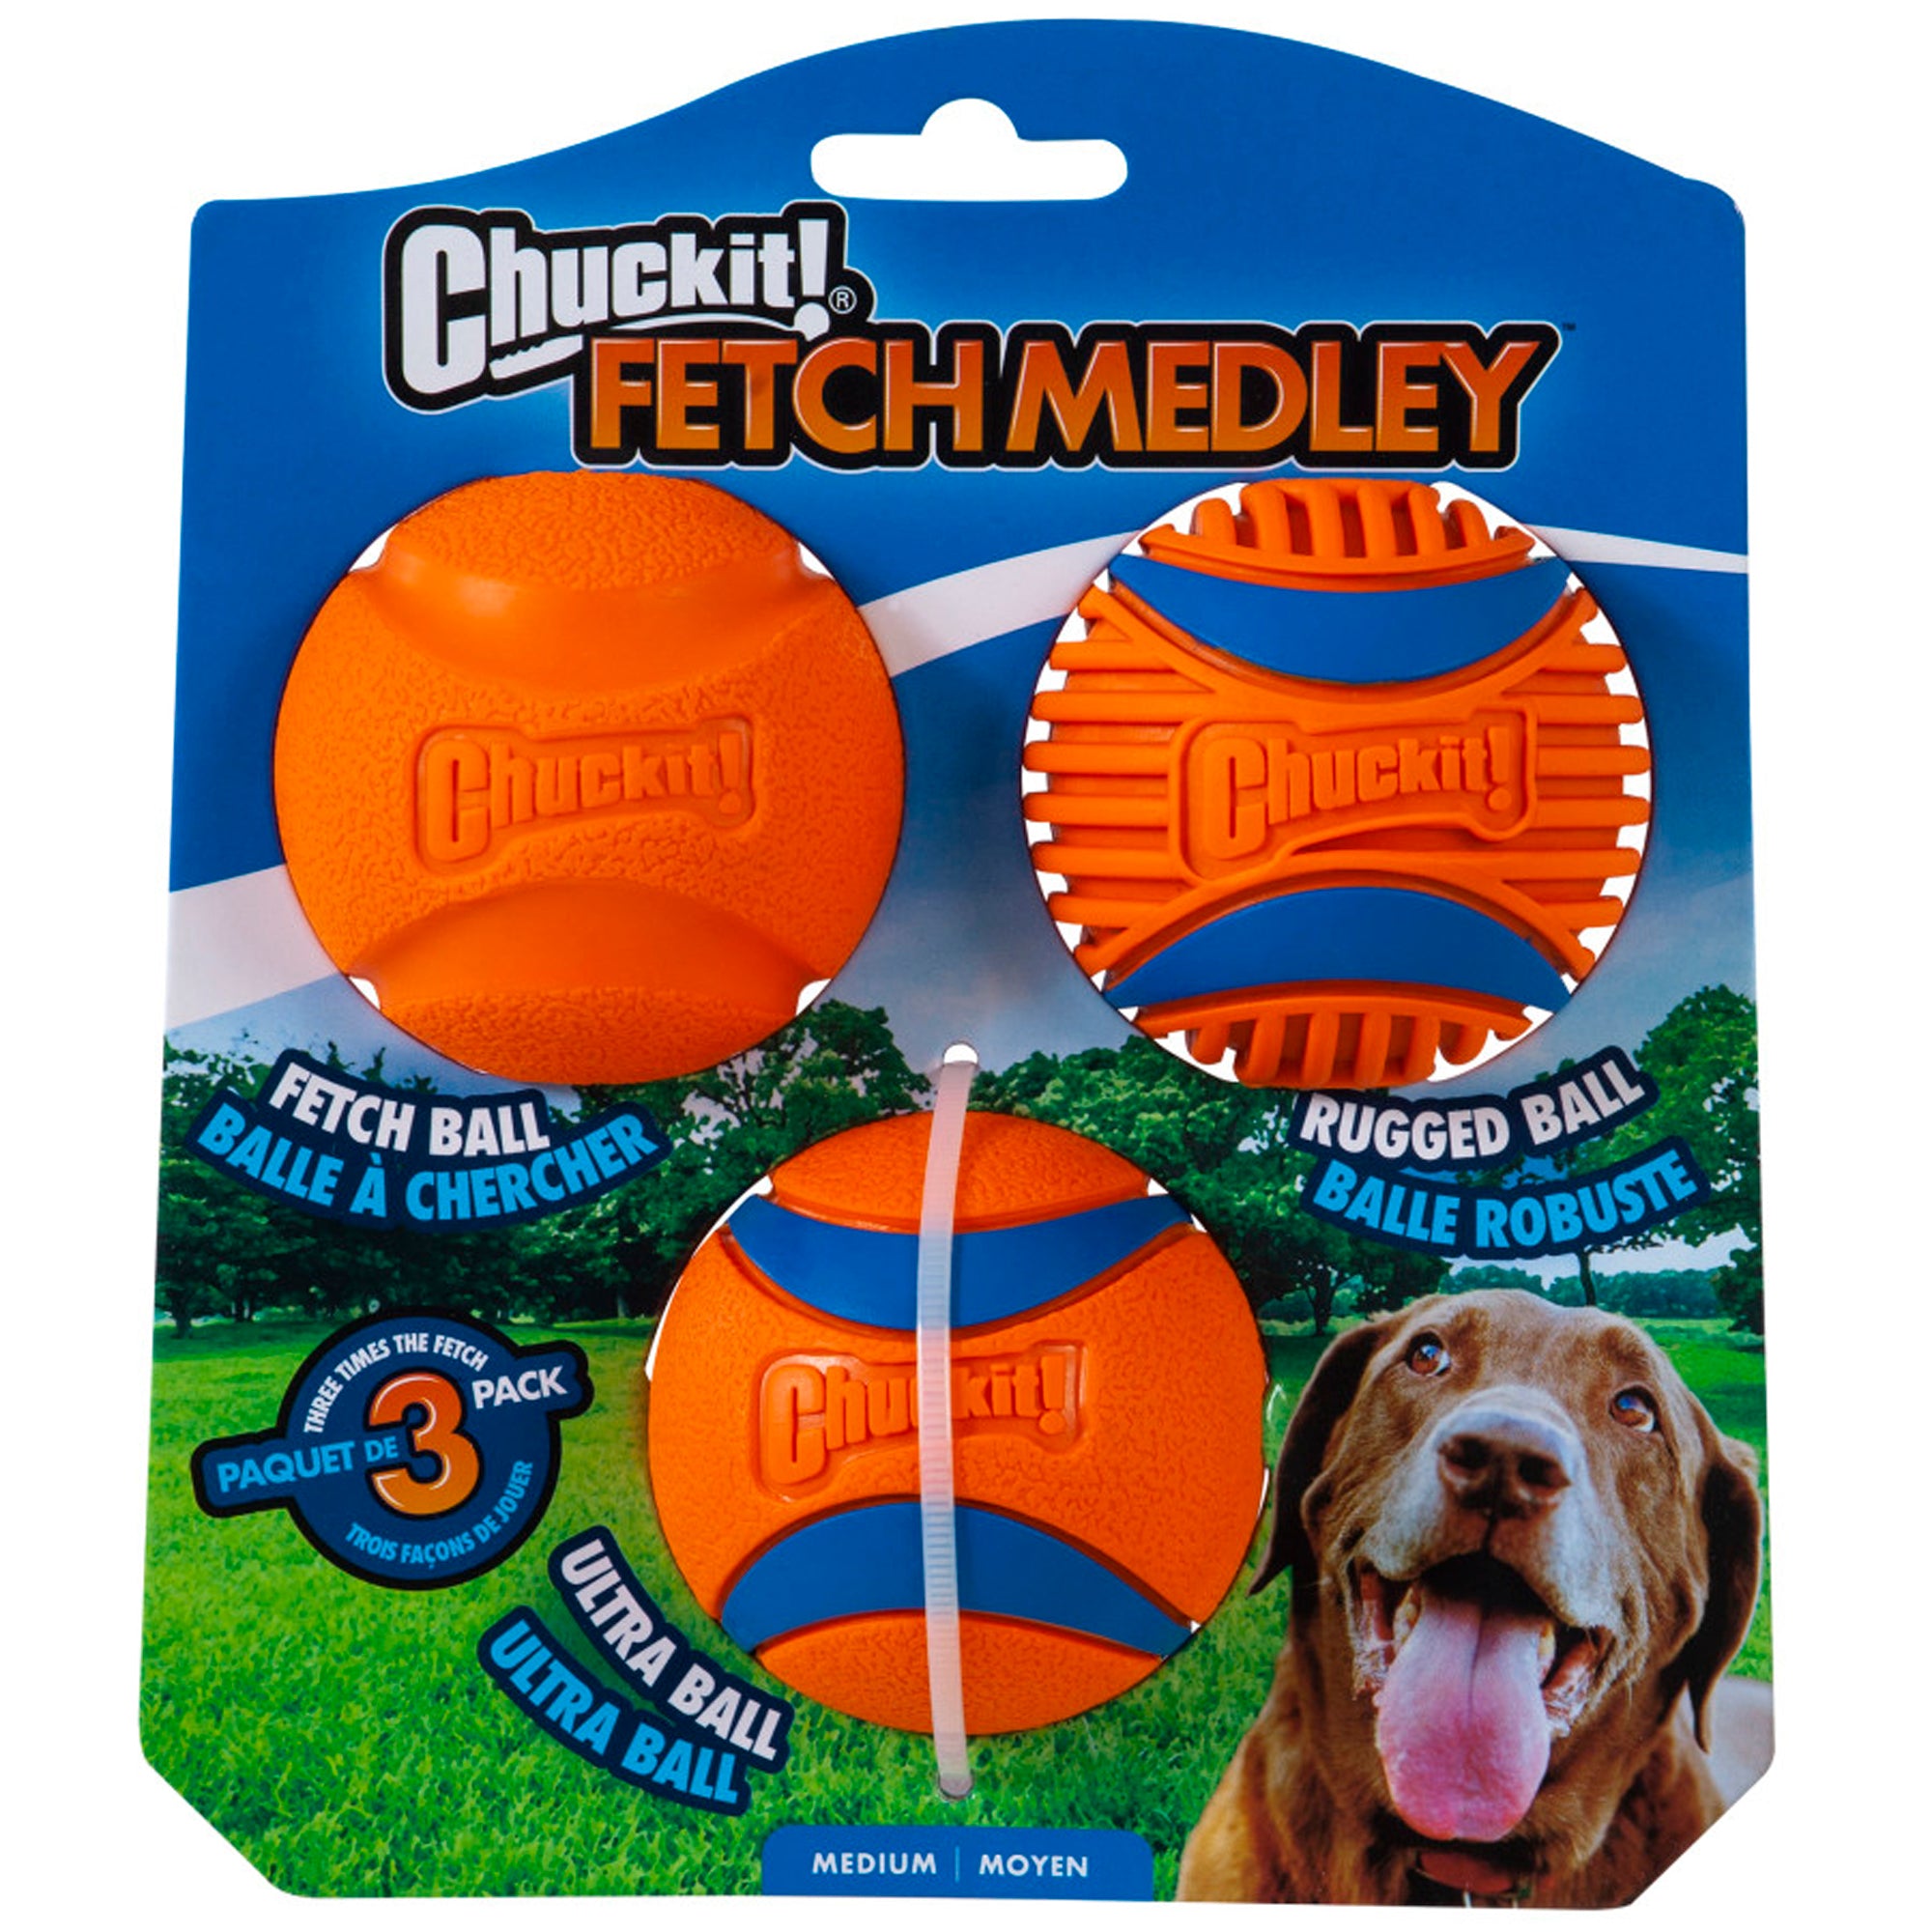 Chuckit Fetch Medley Balls Gen 3 Dog Toy MD